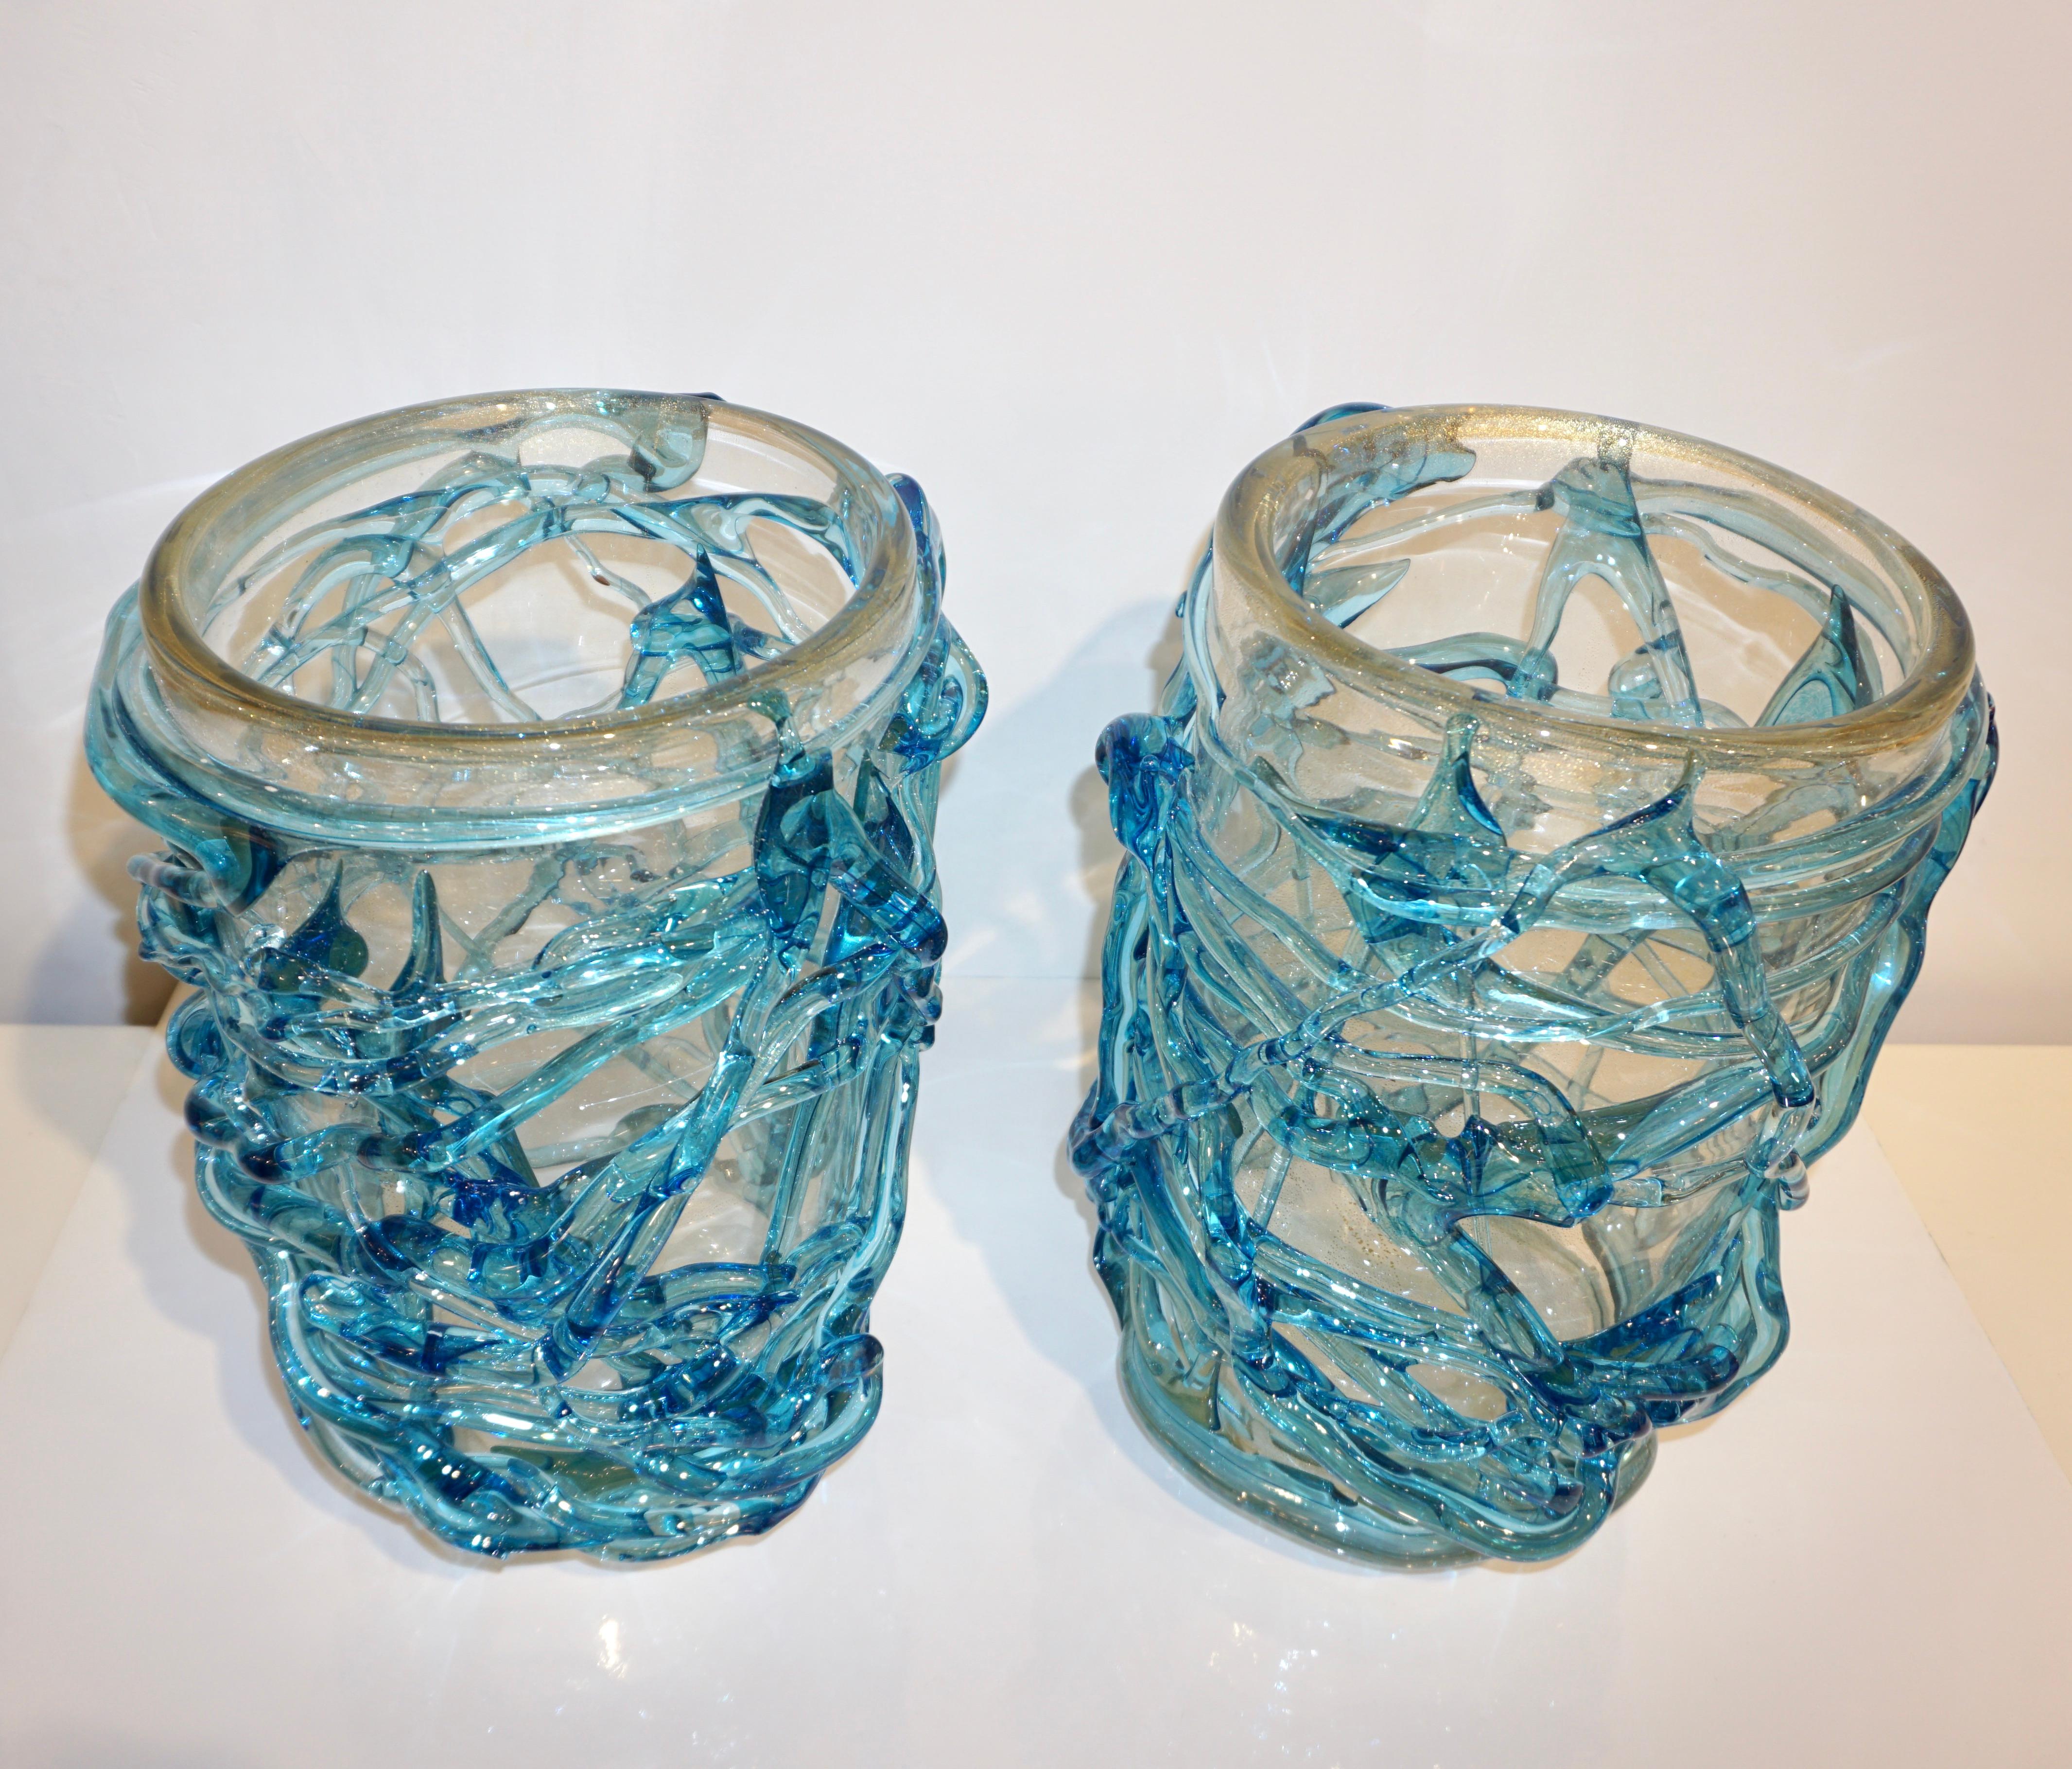 Étonnante paire de vases sculpturaux vénitiens en verre de Murano de haute qualité du début du 21e siècle, le corps en verre soufflé transparent et cristallin est largement travaillé avec une inclusion de poussière en or 24 carats, décoré d'une